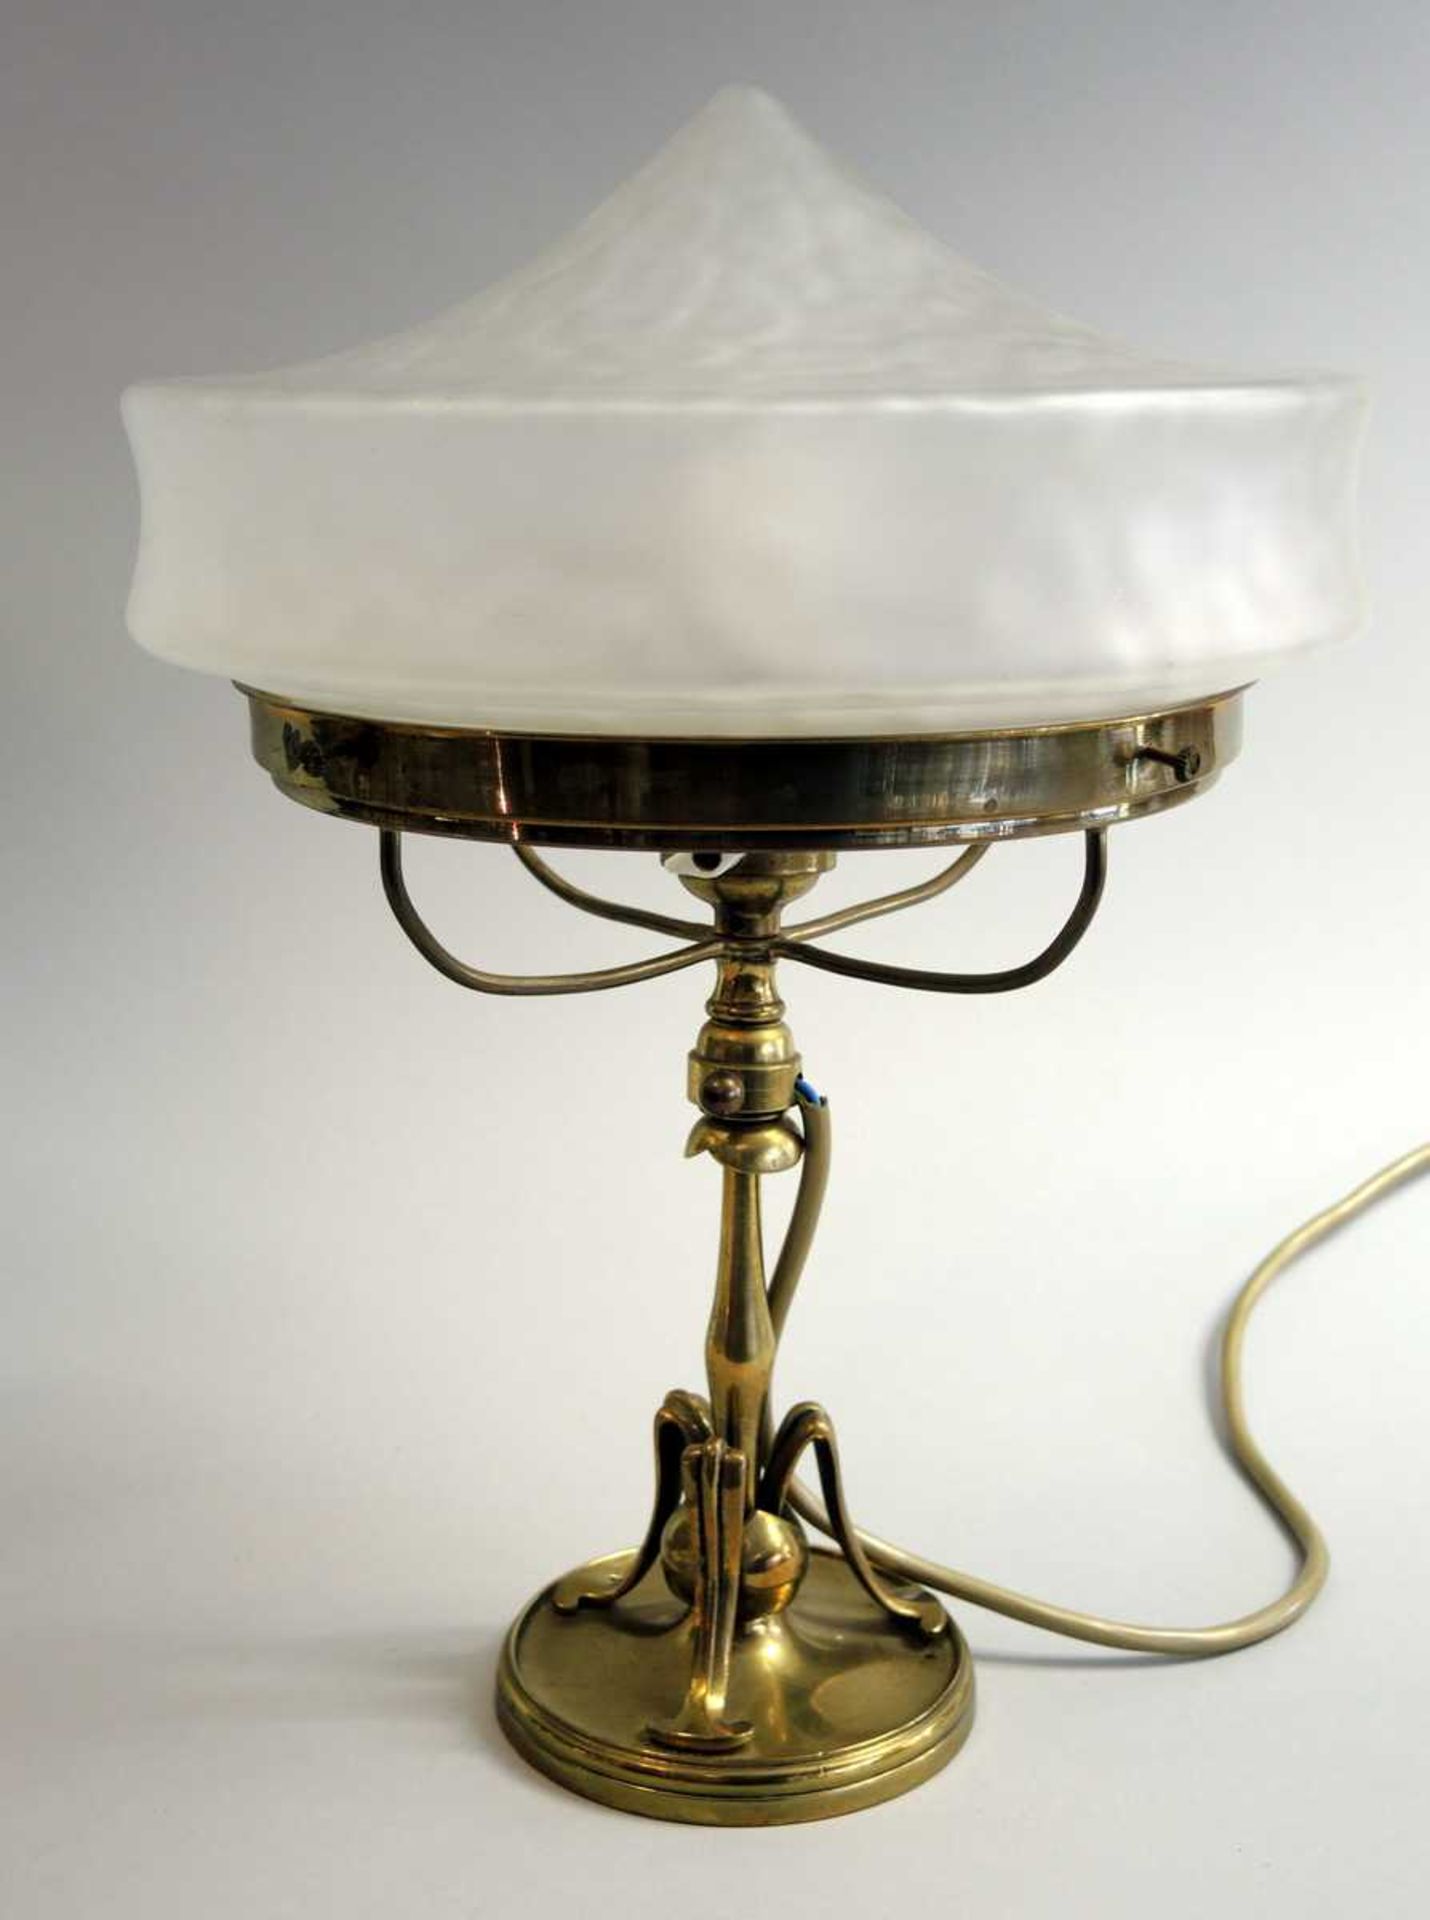 Jugendstil Tischlampe Tischlampe mit Messingfuß und Glasschirm. Um 1900. H ca. 33 cm